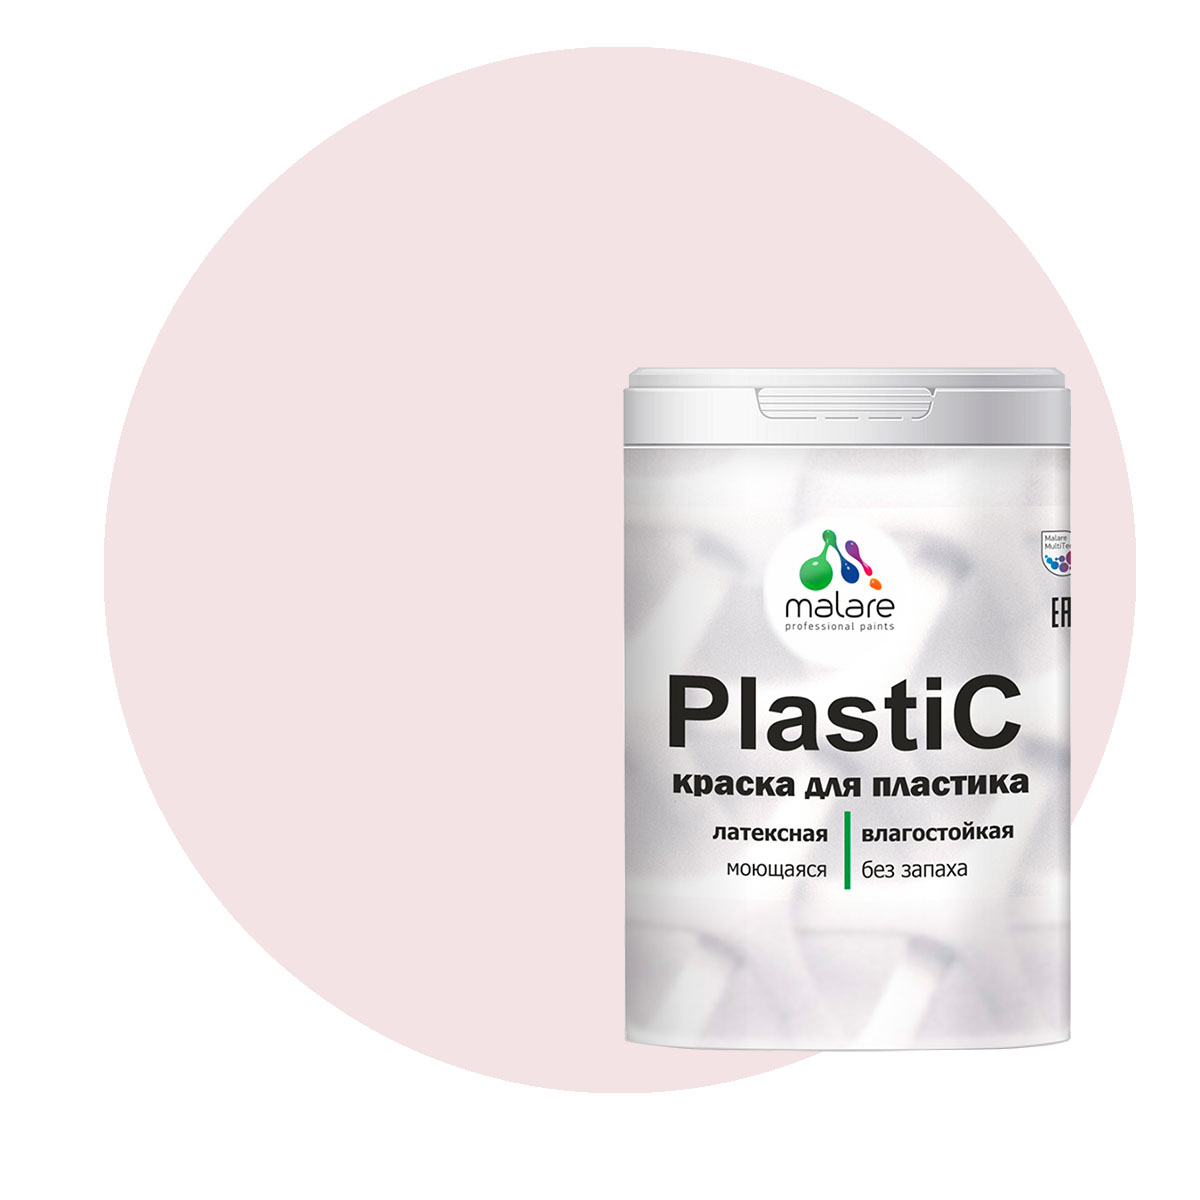 Краска Malare PlastiC для пластика, ПВХ, для сайдинга, морской риф, 1 кг. зубная паста с морской солью 100г